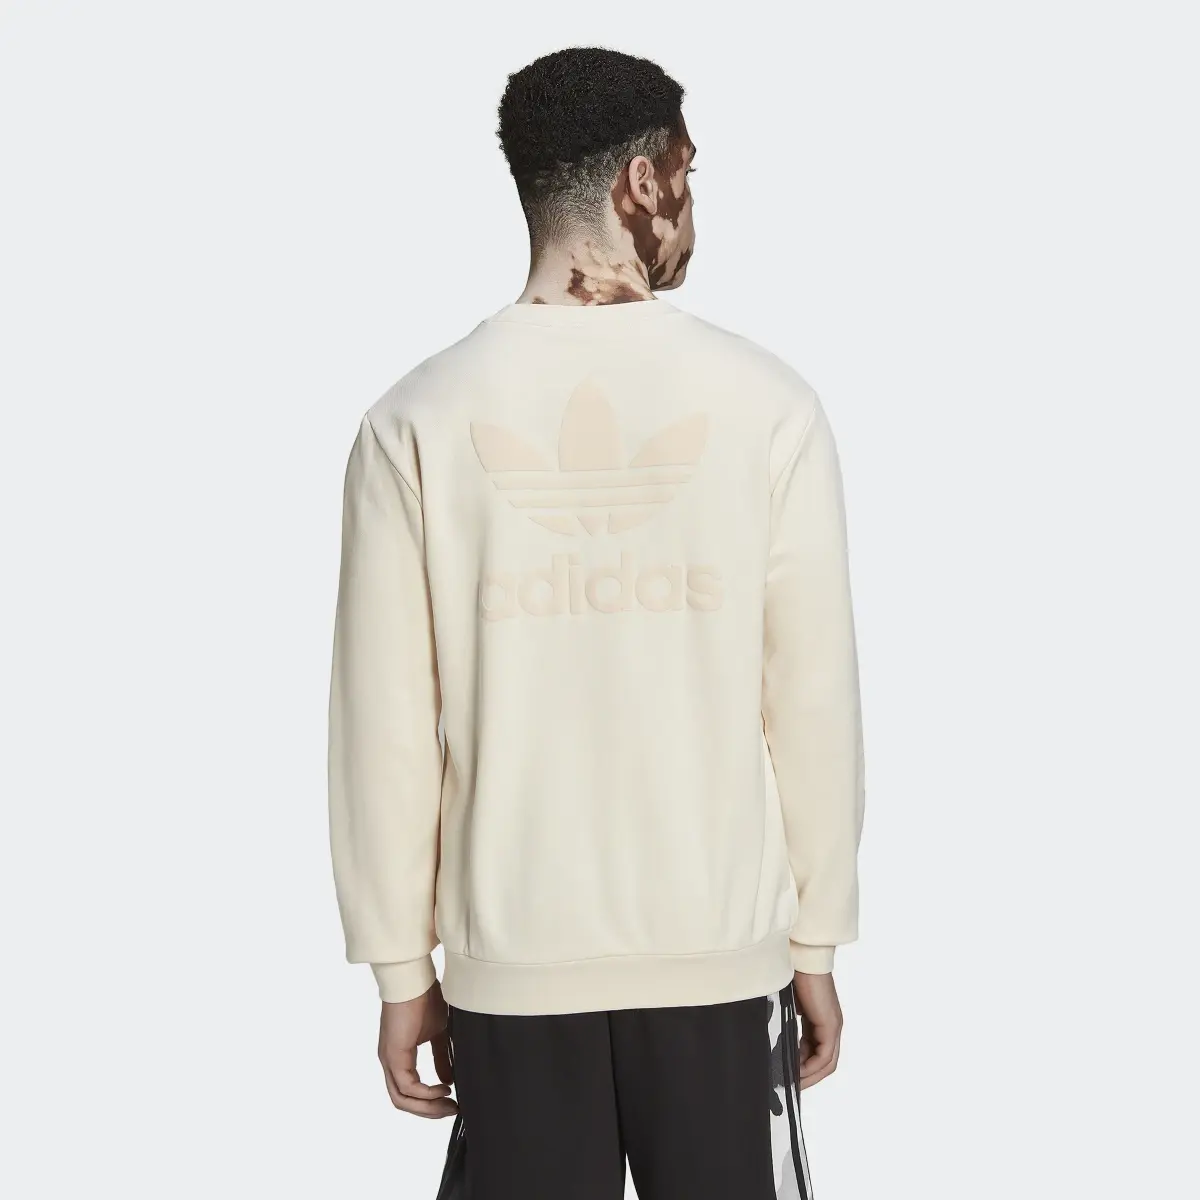 Adidas Trefoil Series Street Sweatshirt. 3